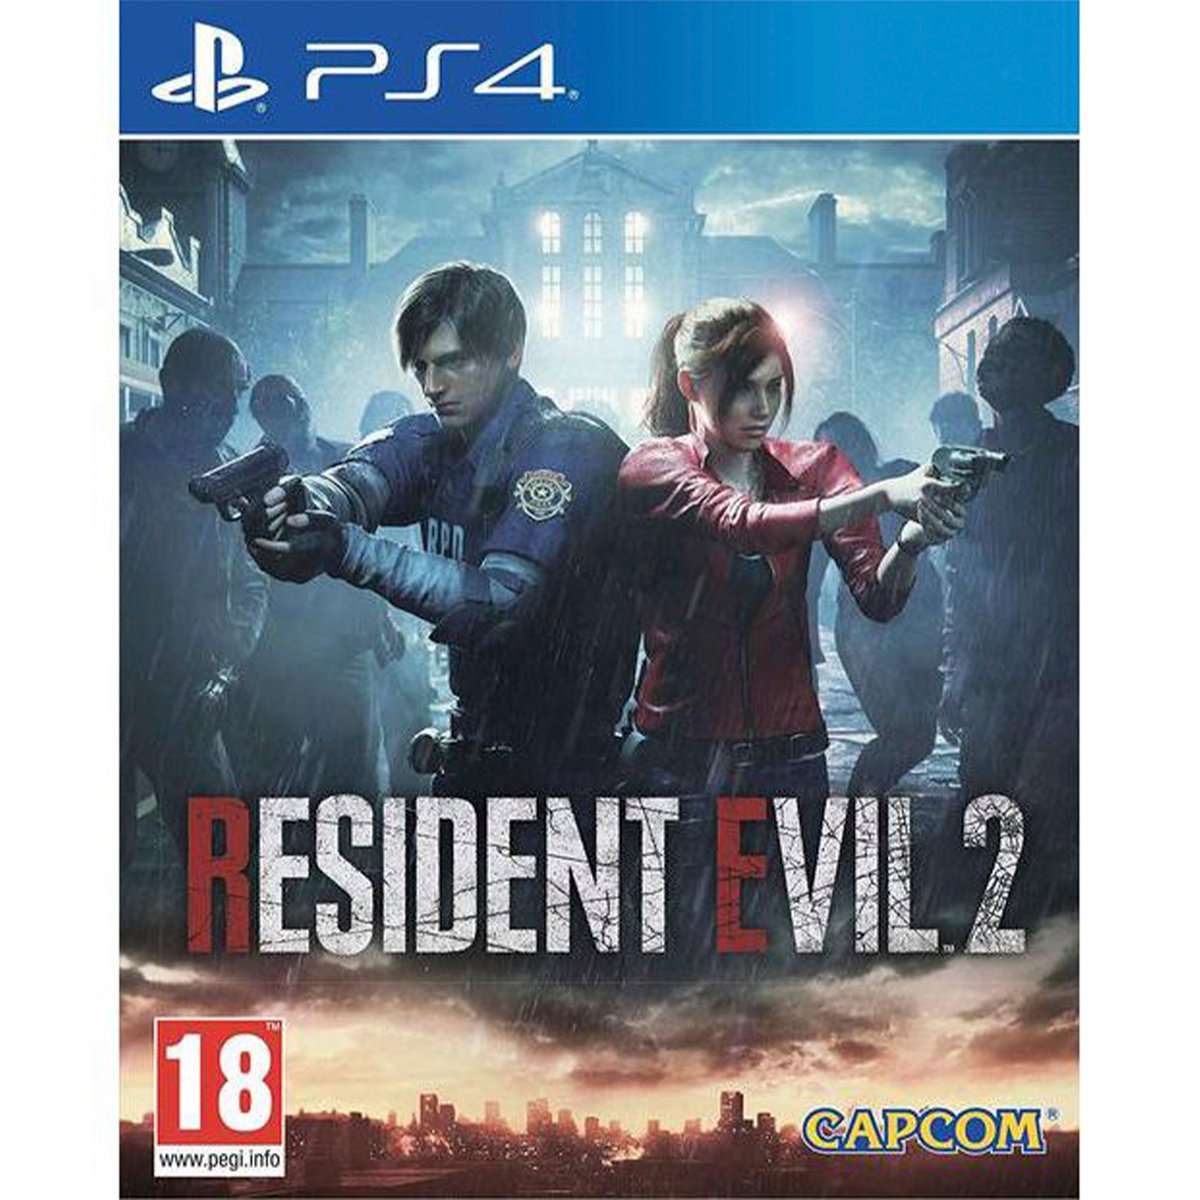 Resident Evil 2 PS4